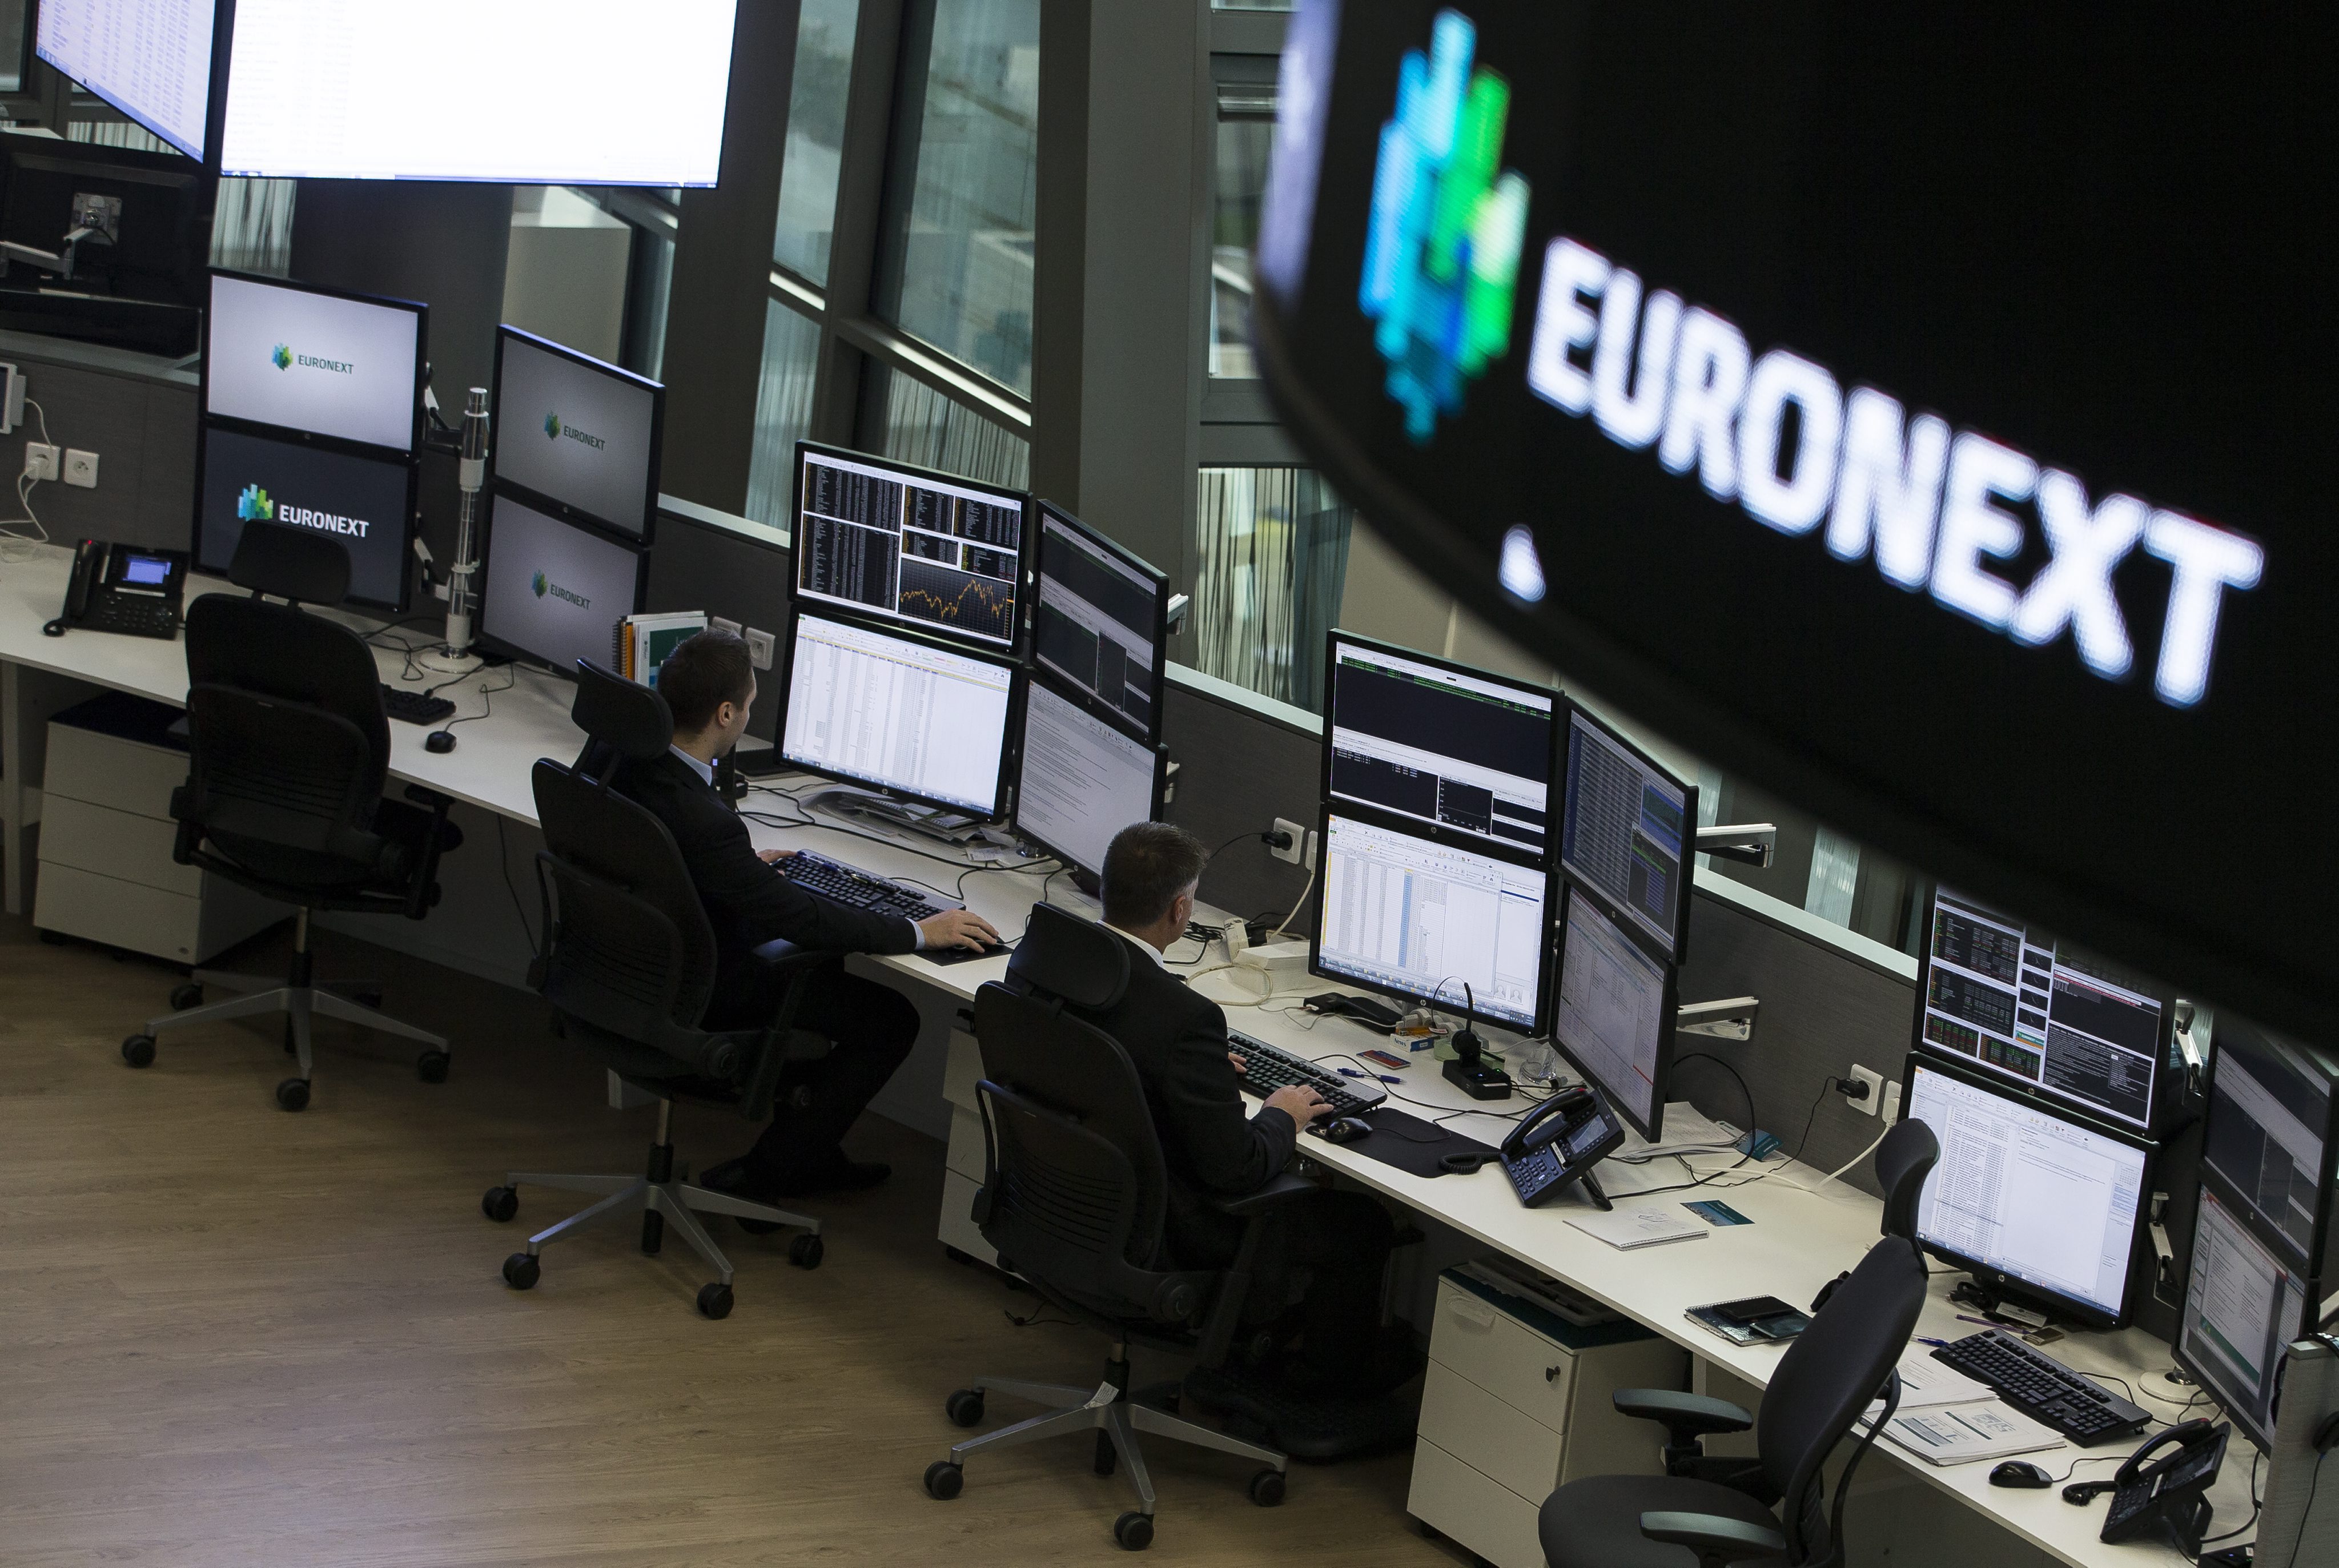 de Amsterdamse beurs Euronext al twee jaar snellere toegang blijkt te geven tot de beurs aan een selecte groep flitshandelaren